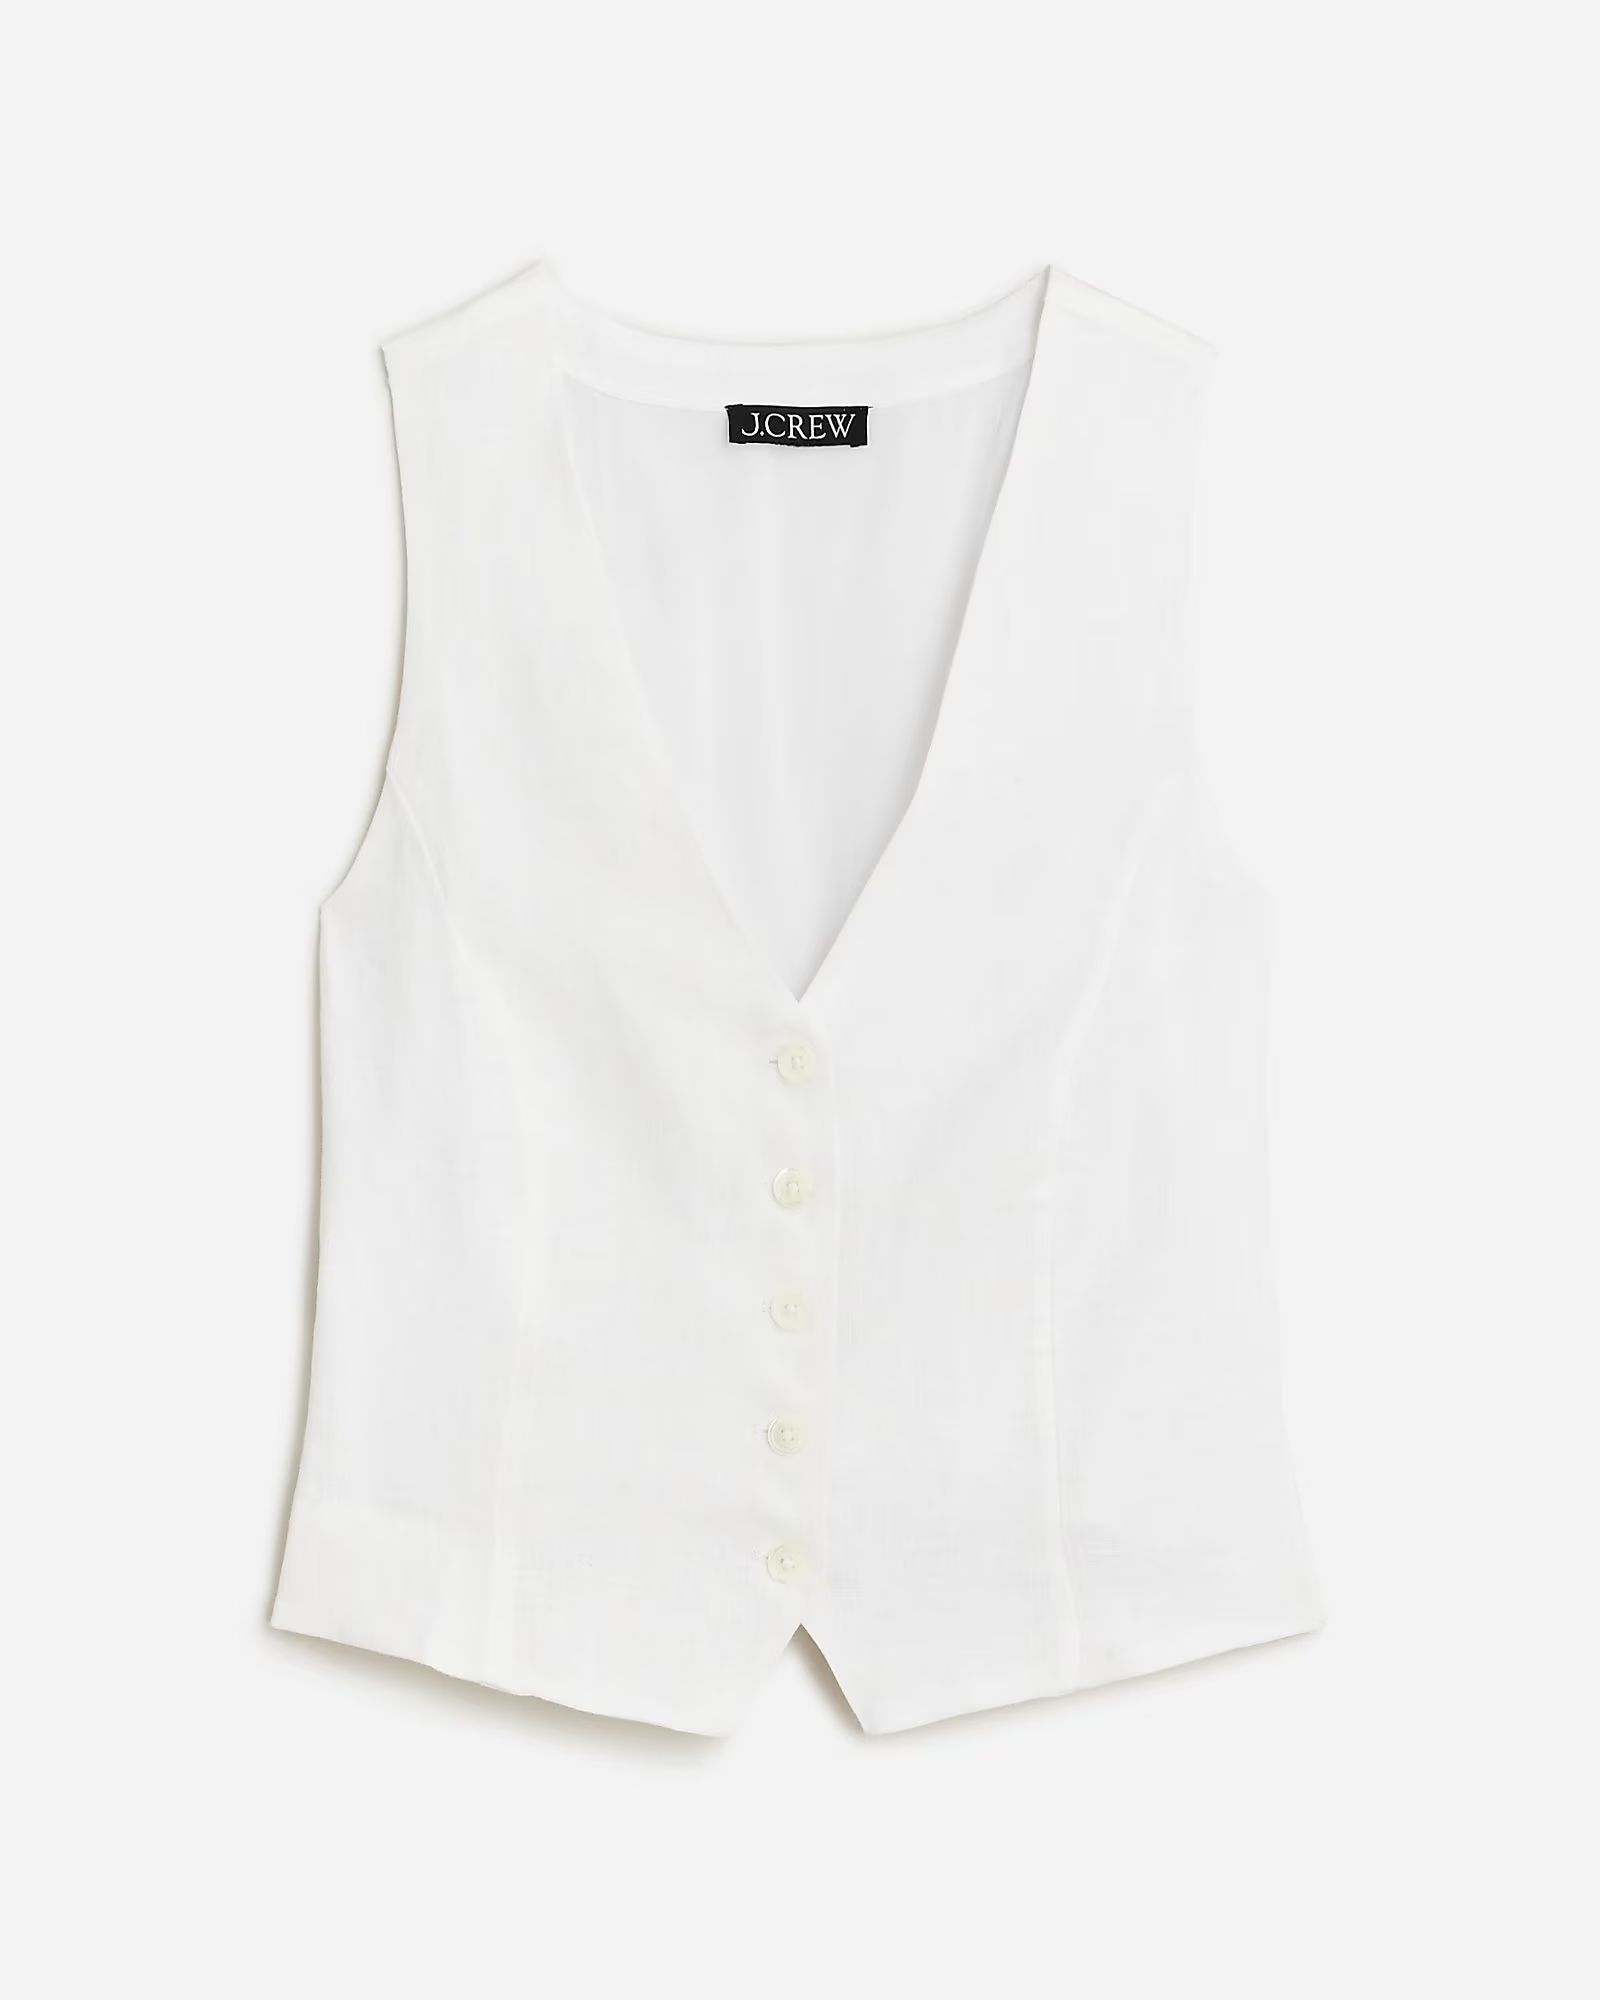 Slim-fit linen vest | J.Crew US